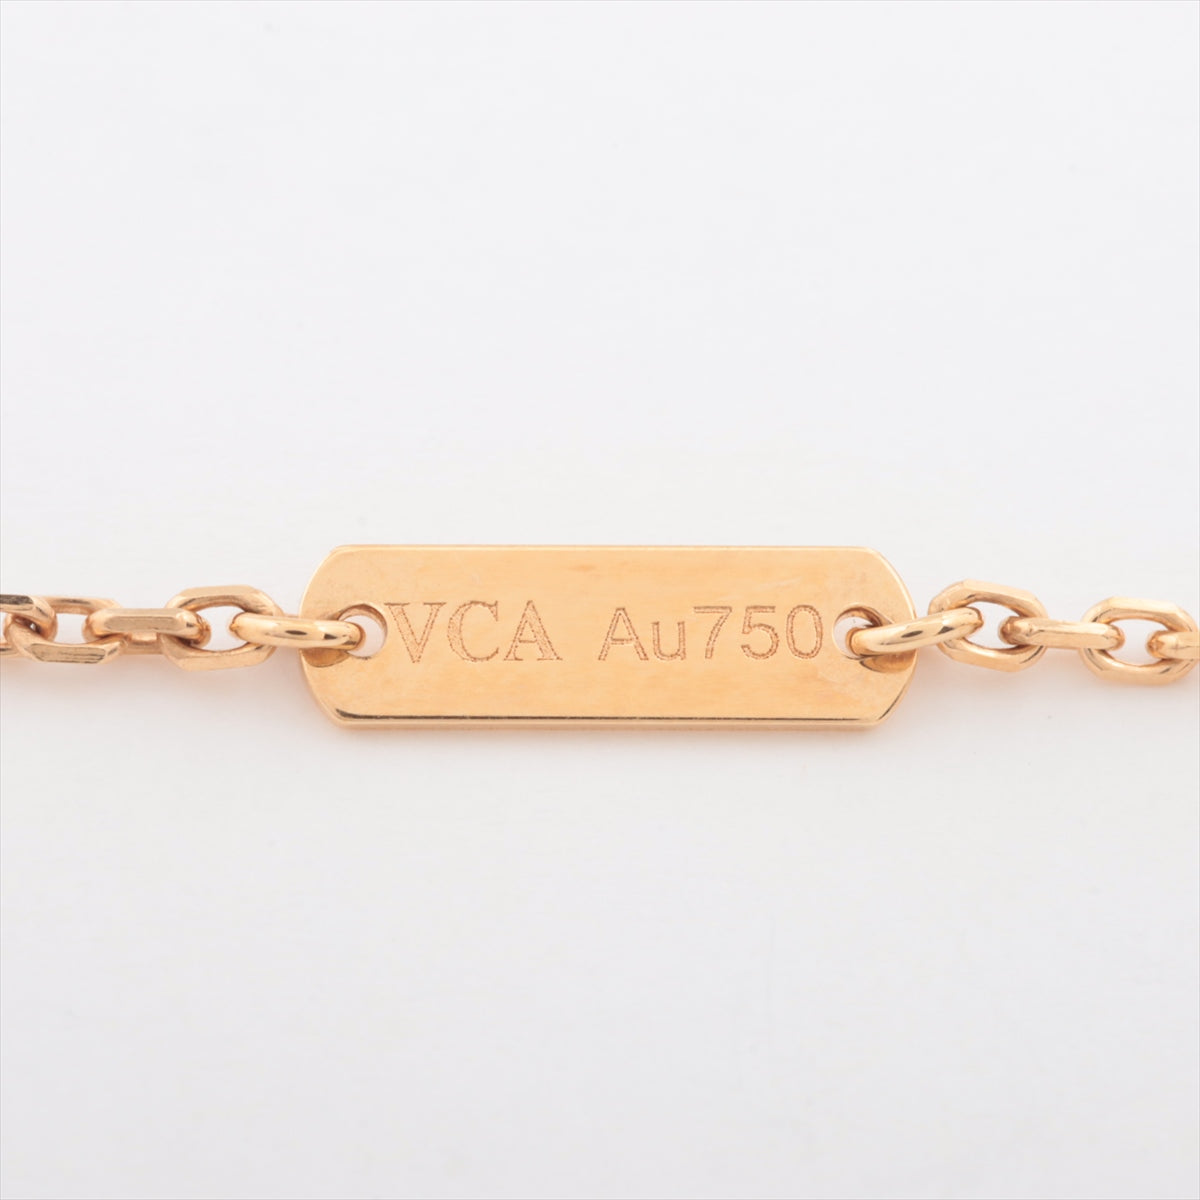 Van Cleef & Arpels Vintage Alhambra Golden S Diamond Necklace 750 (YG) 6.5g VCARP2R700 2018 Limited